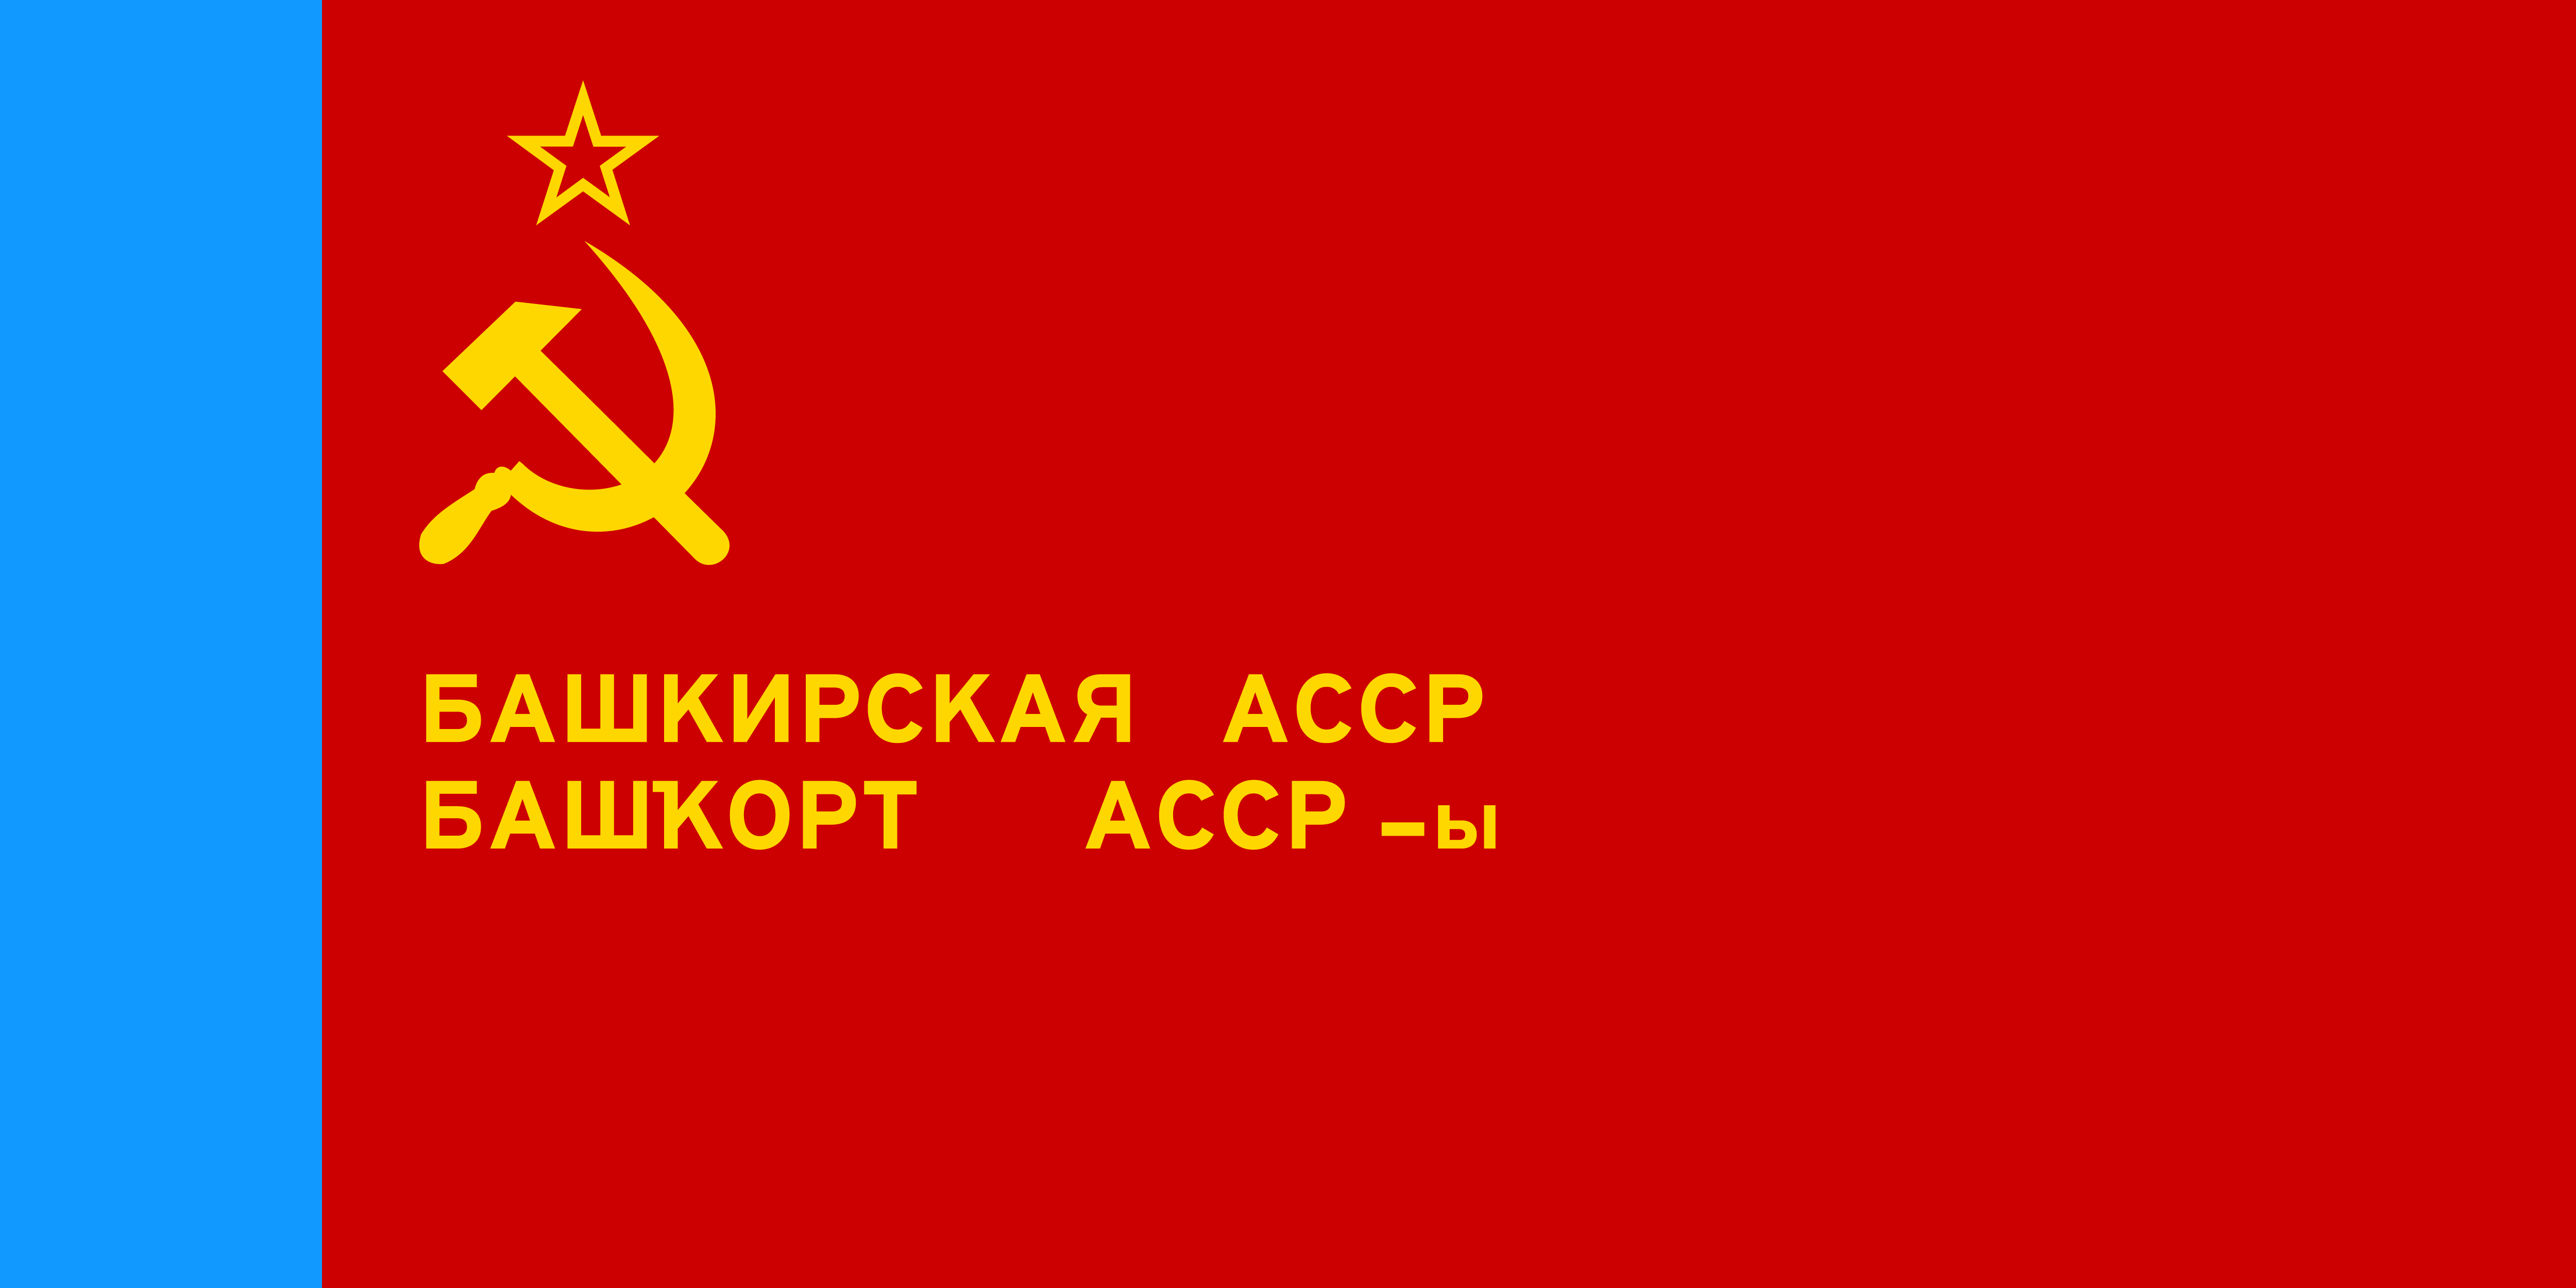 巴什基爾蘇維埃社會主義自治共和國